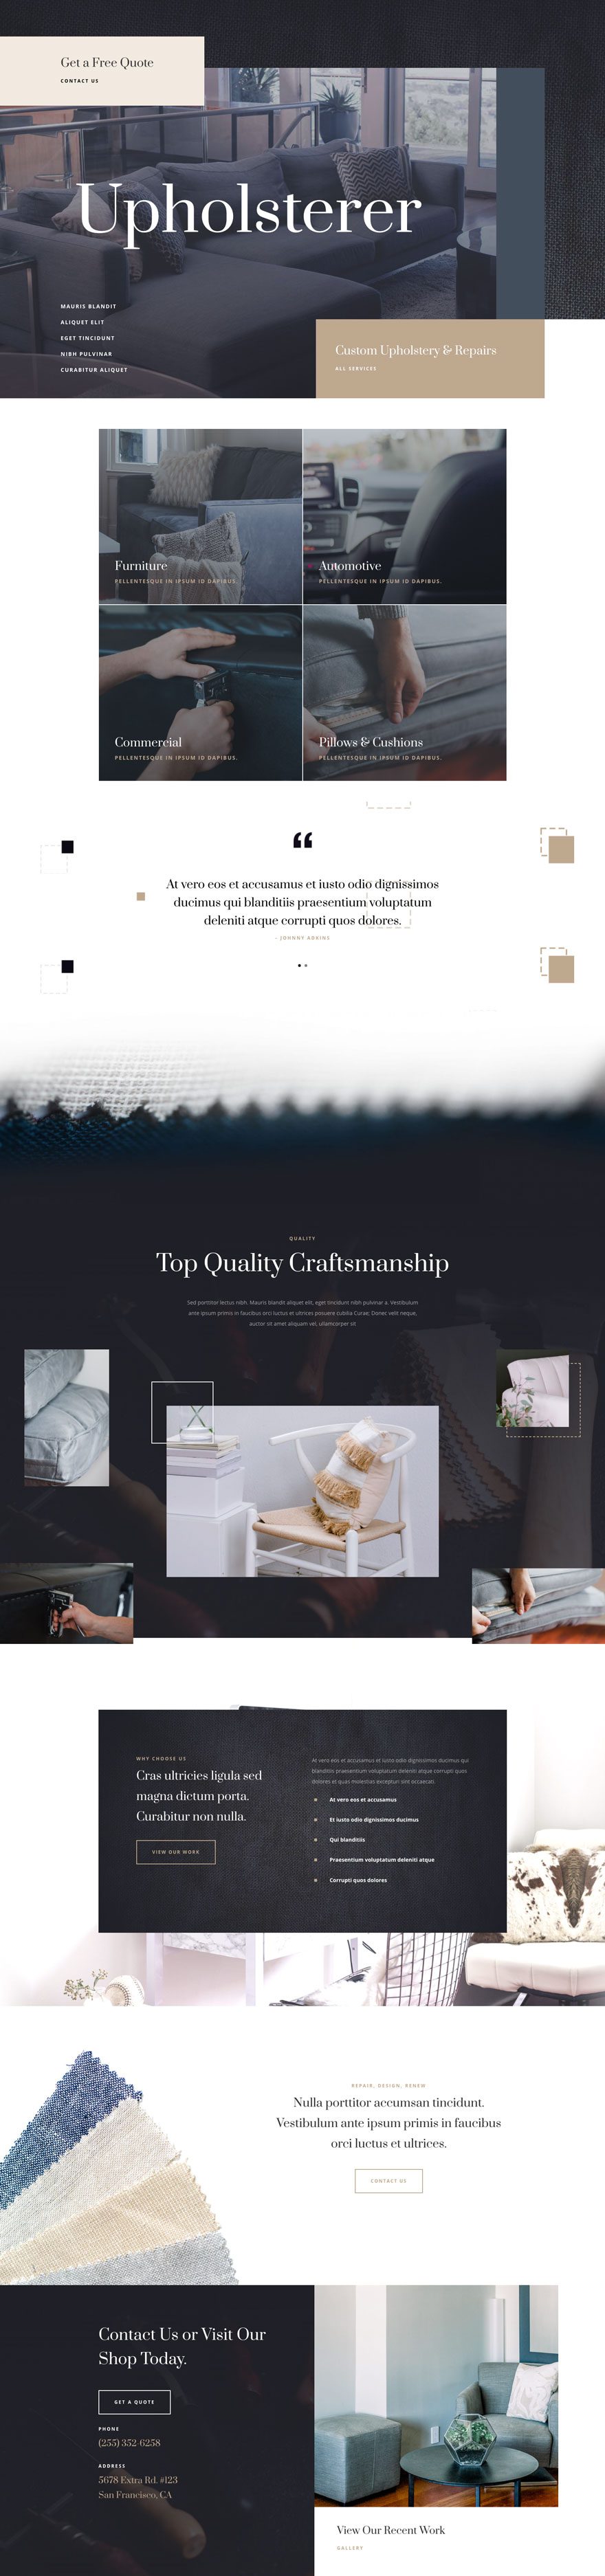 upholstery website